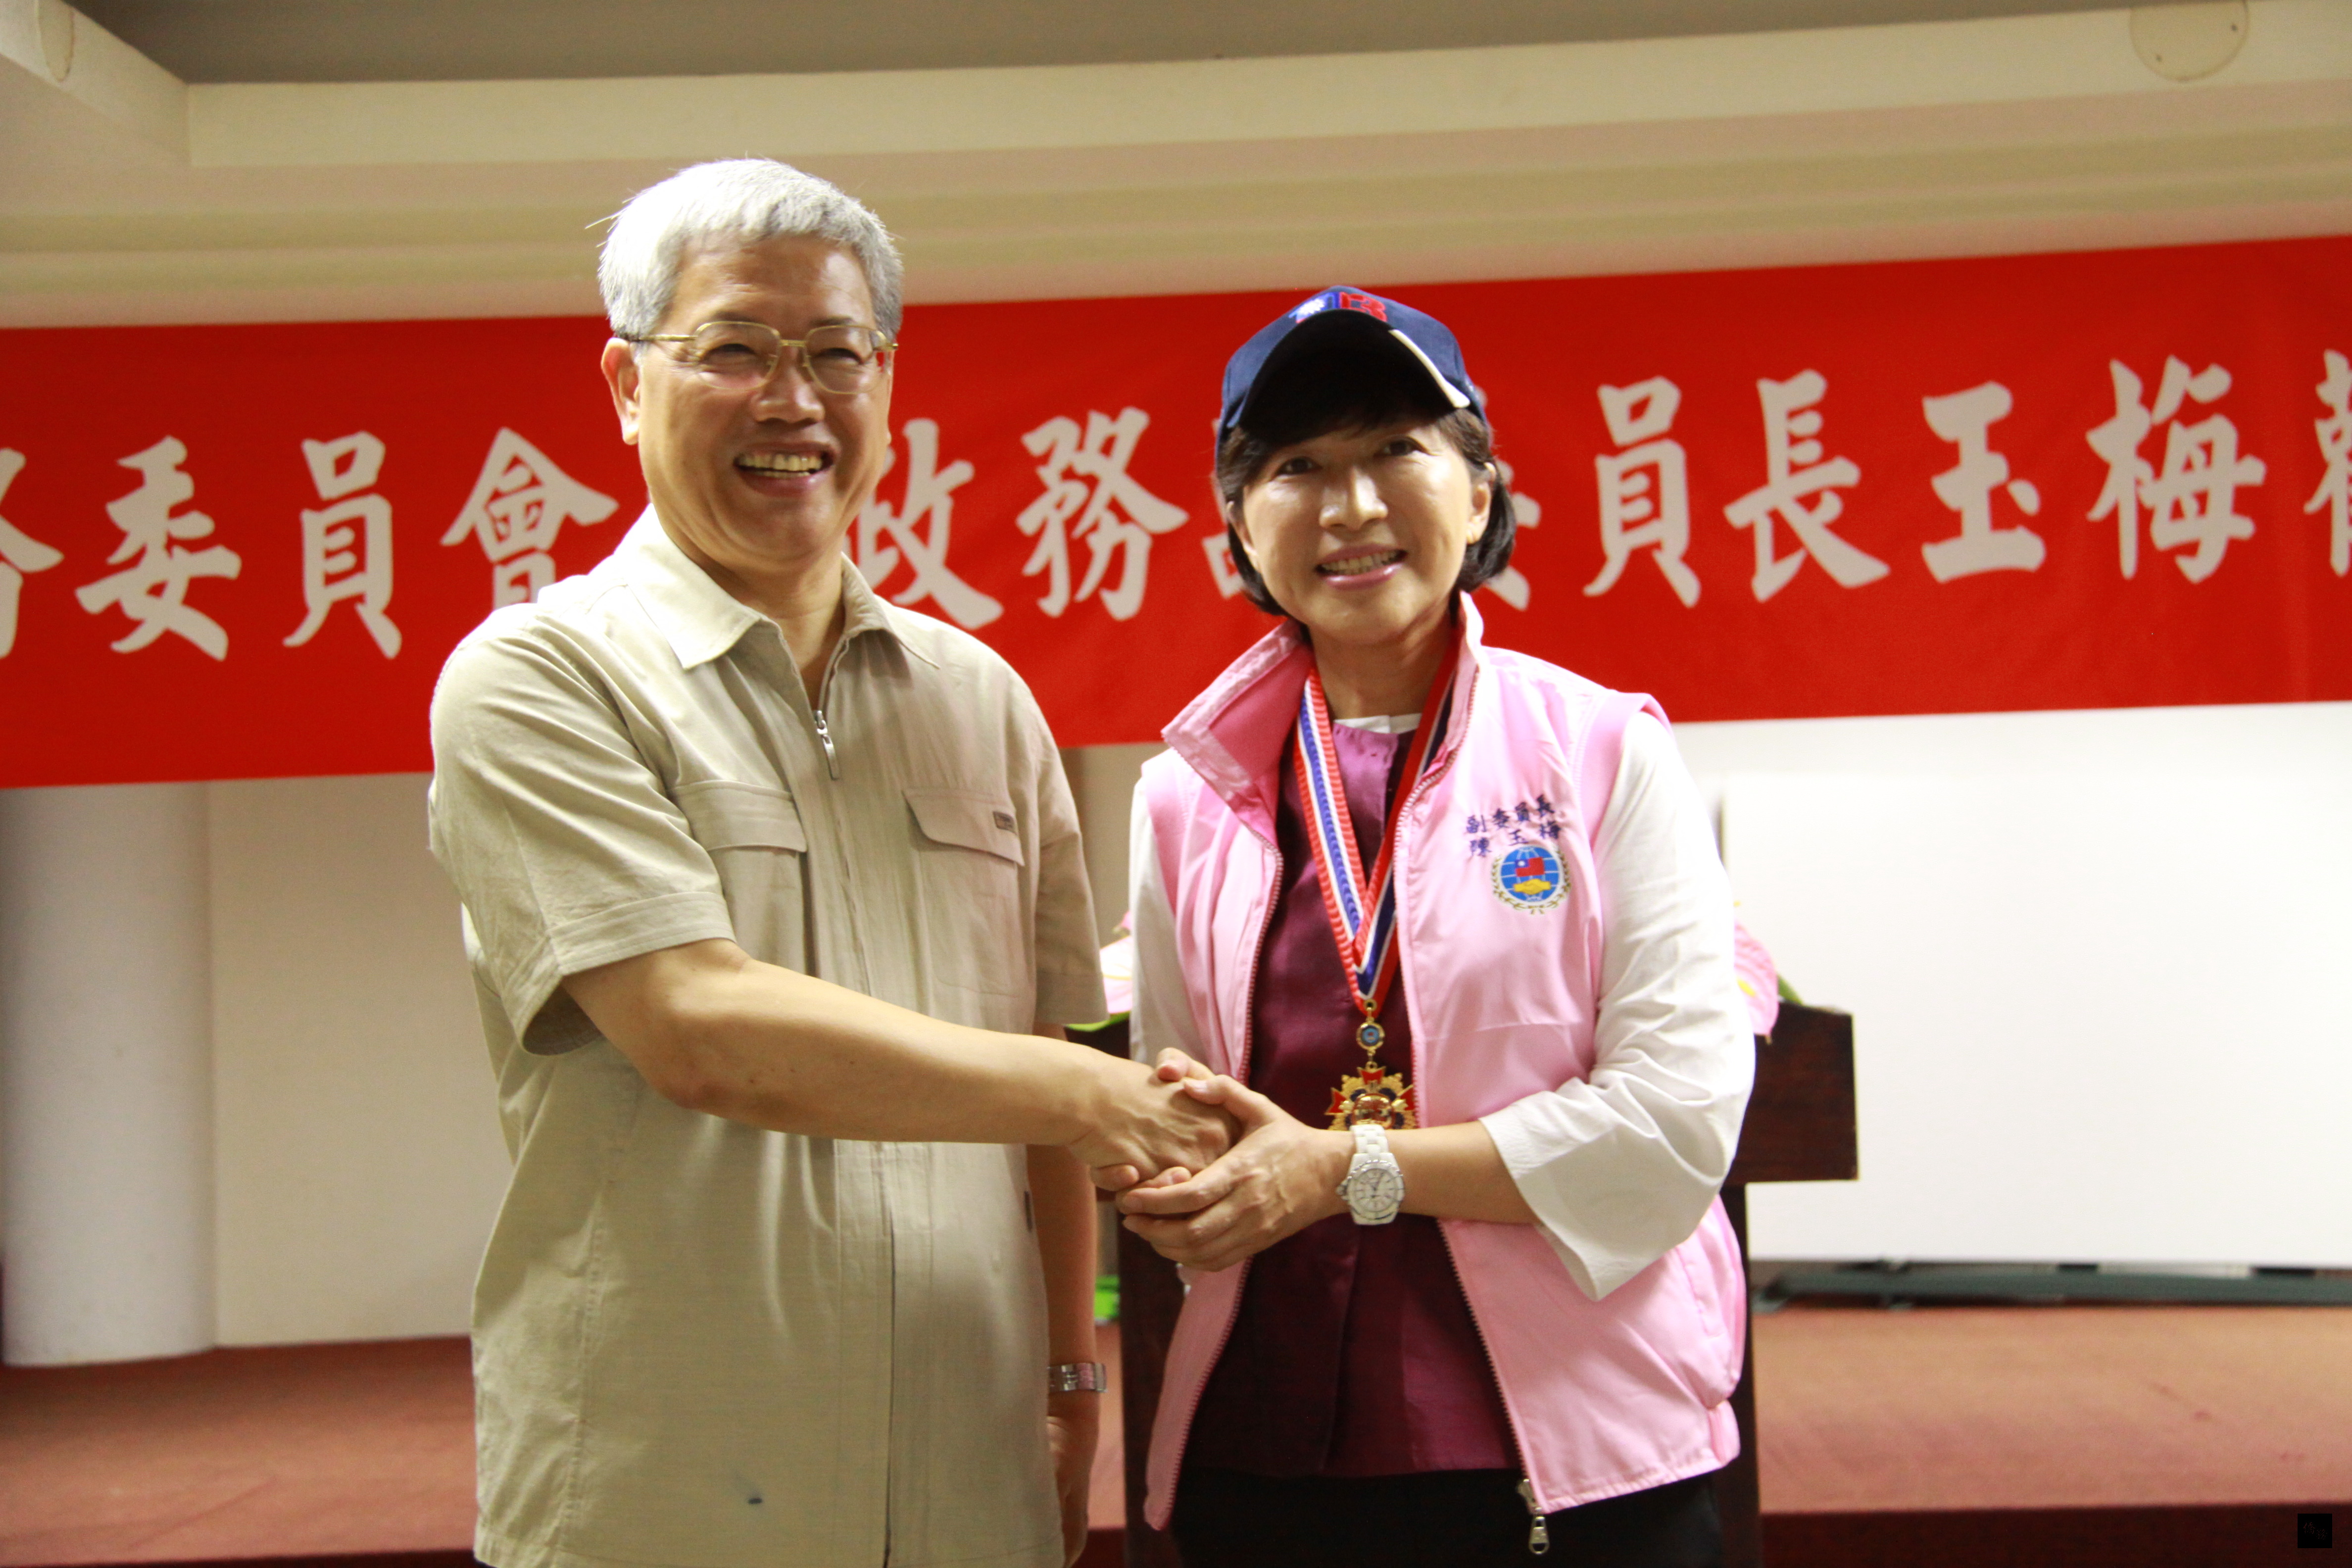 僑委會委員長陳士魁（左）致贈志工帽及志工背心給副委員長陳玉梅（右），希望她能夠做永遠的僑務志工。